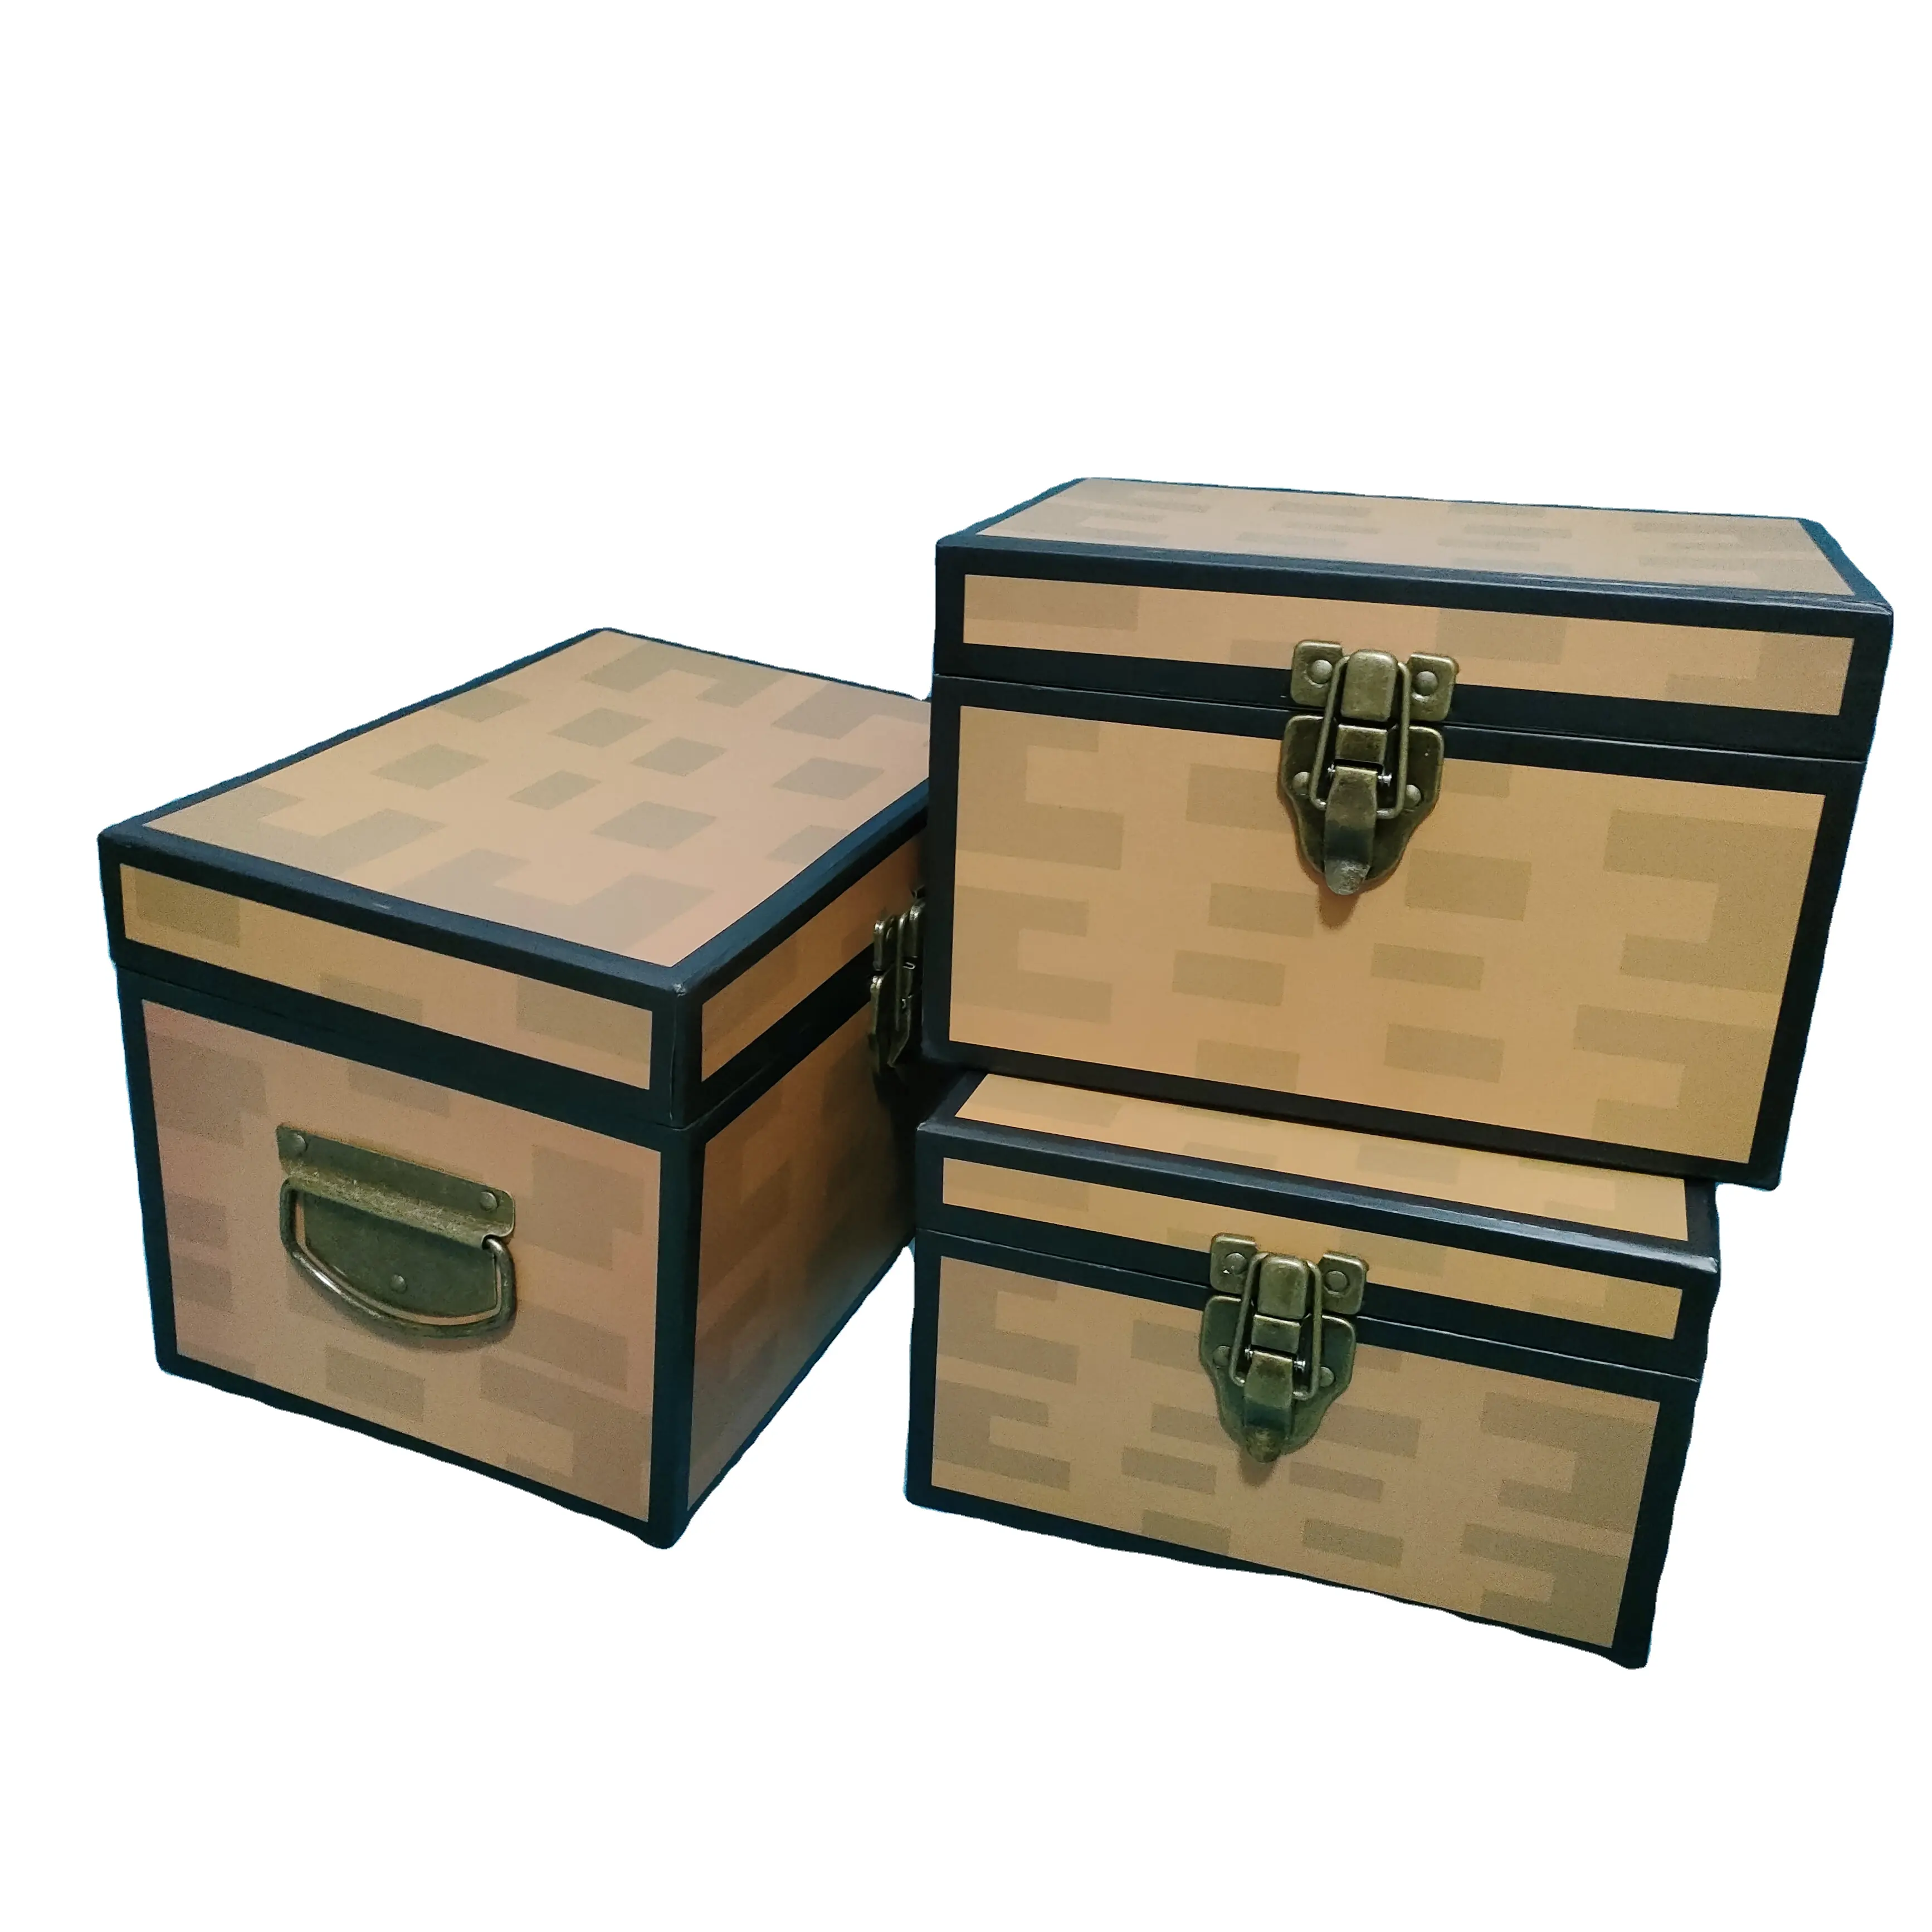 Caja de almacenamiento de cartón reciclado con temática pirata Cajas de papel creativas para soluciones de almacenamiento ecológicas